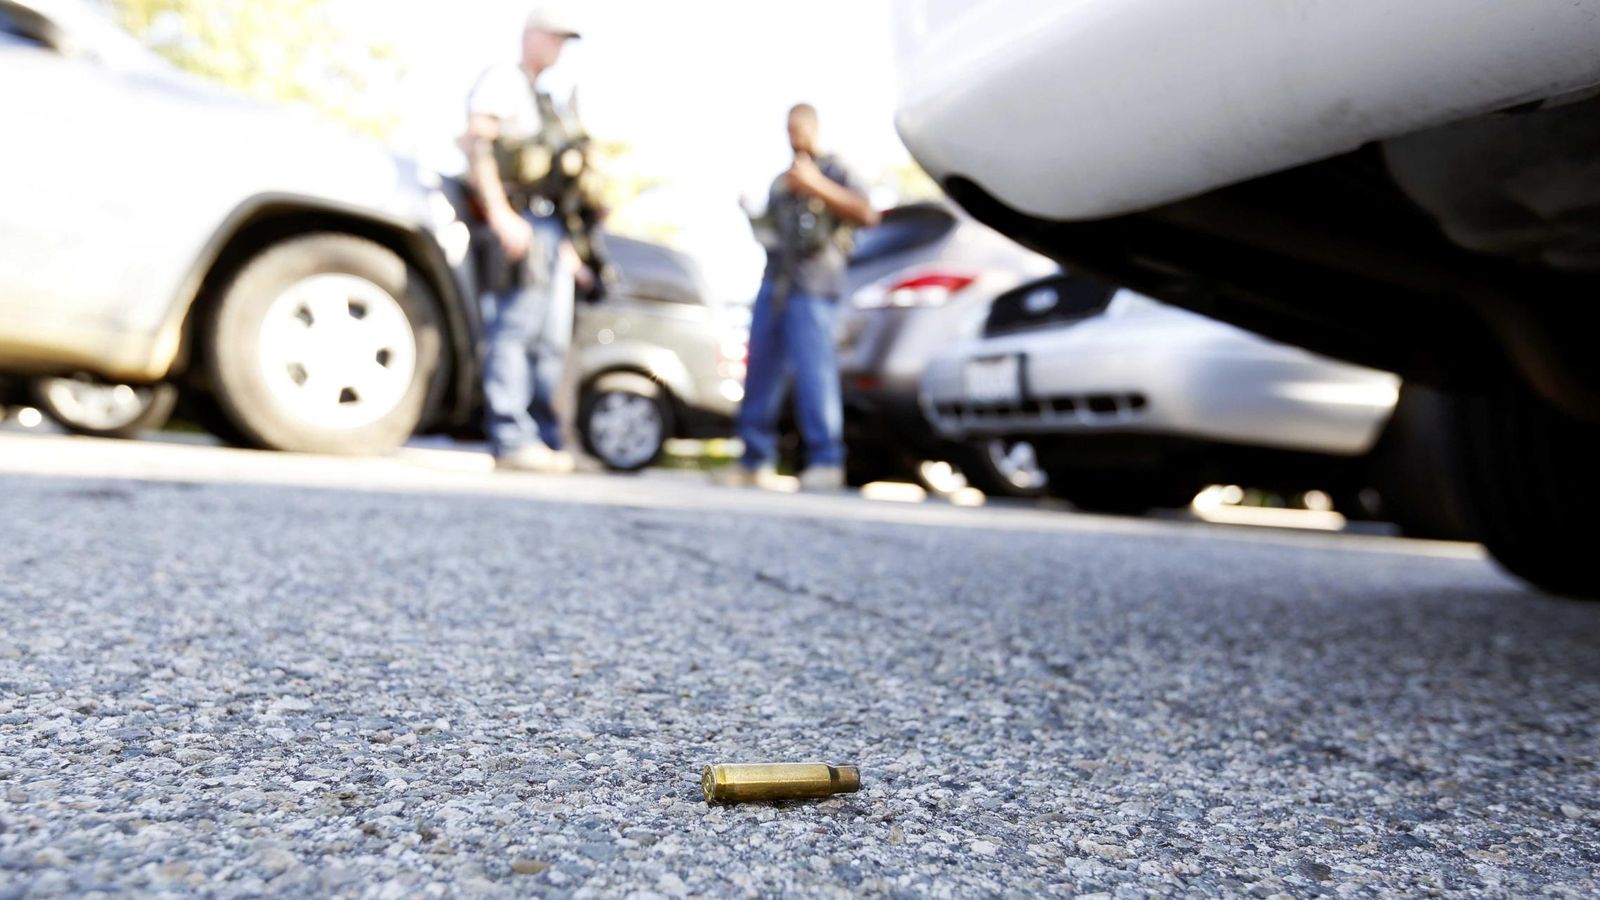 Foto: Un casquillo de bala encontrado en el lugar del tiroteo de San Bernardino, California, el 2 de diciembre de 2015 (Reuters)